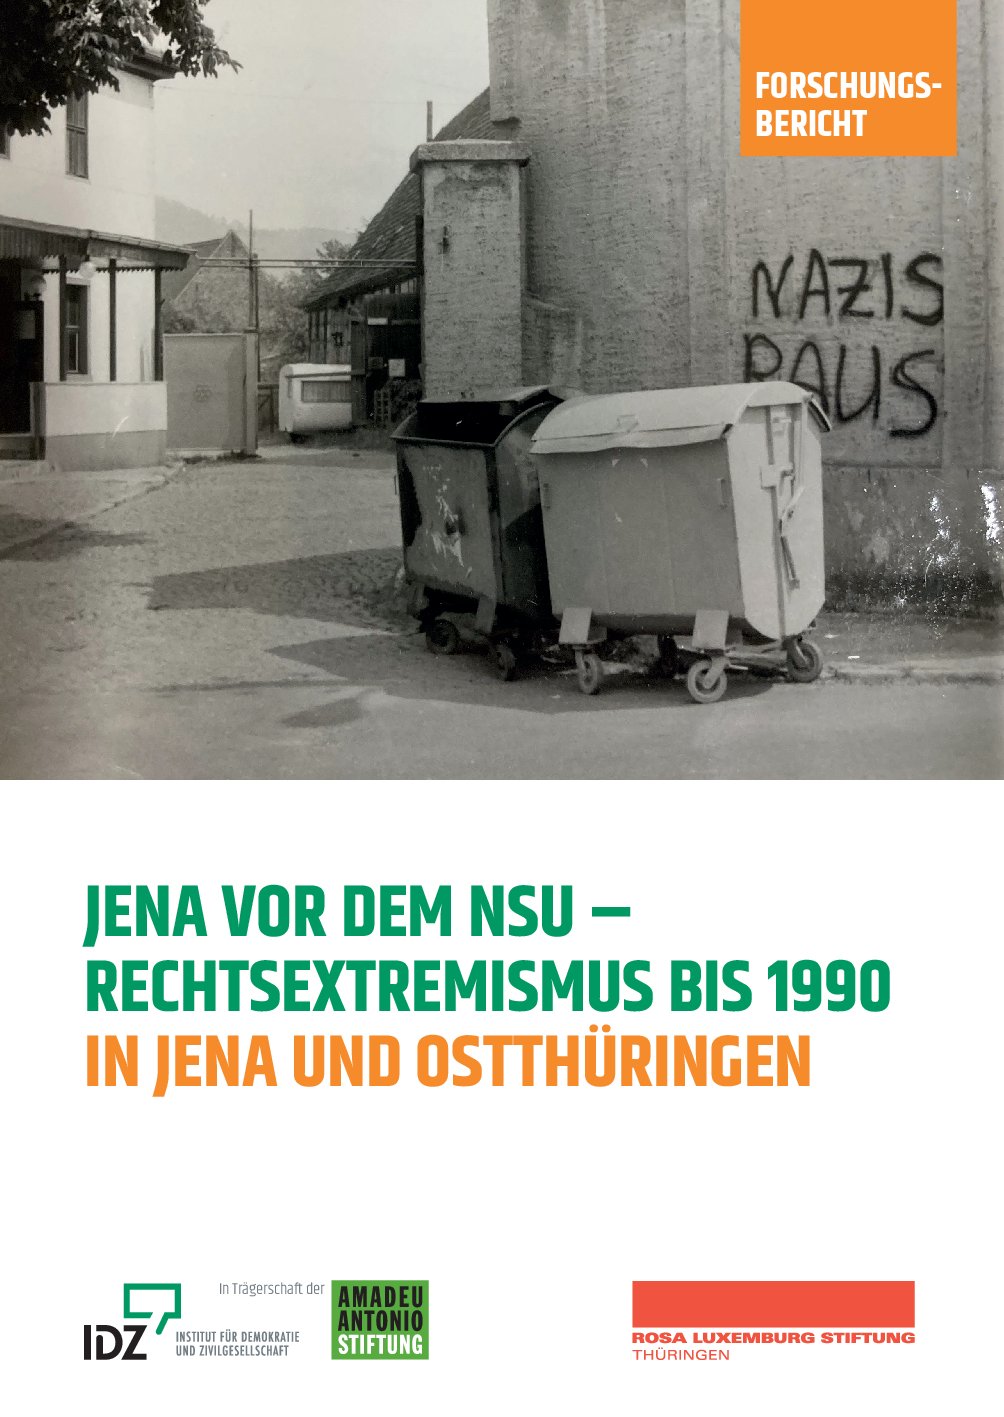 „Jena vor dem NSU – Rechtsextremismus bis 1990 in Jena und Ostthüringen“